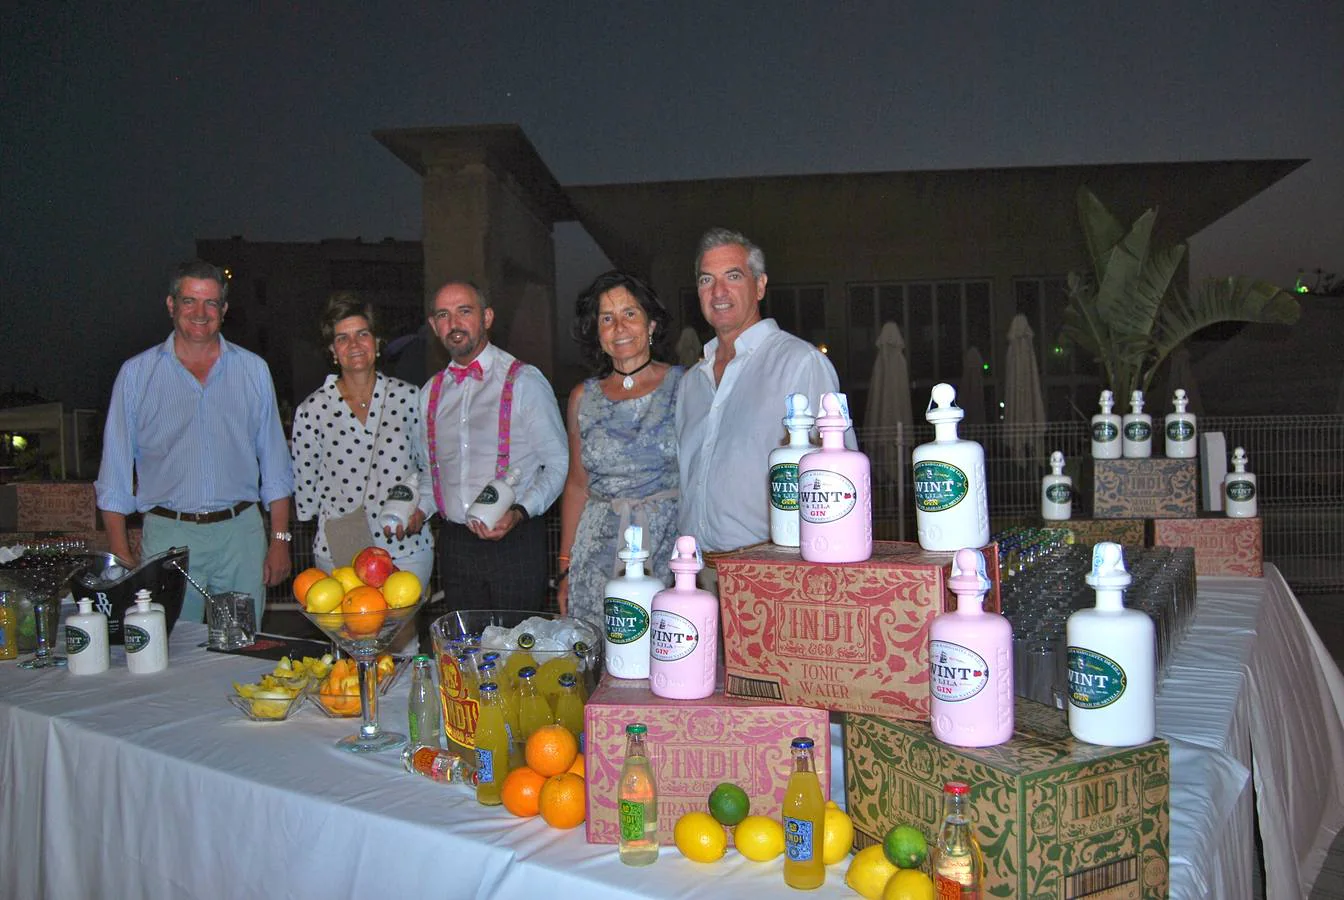 Nini Suances, Sol Diez de Rivera, camarero cedido por Casalbor, Pachi Madariaga y Pais Barquín junto a la barra de bebidas cedida por Casalbor